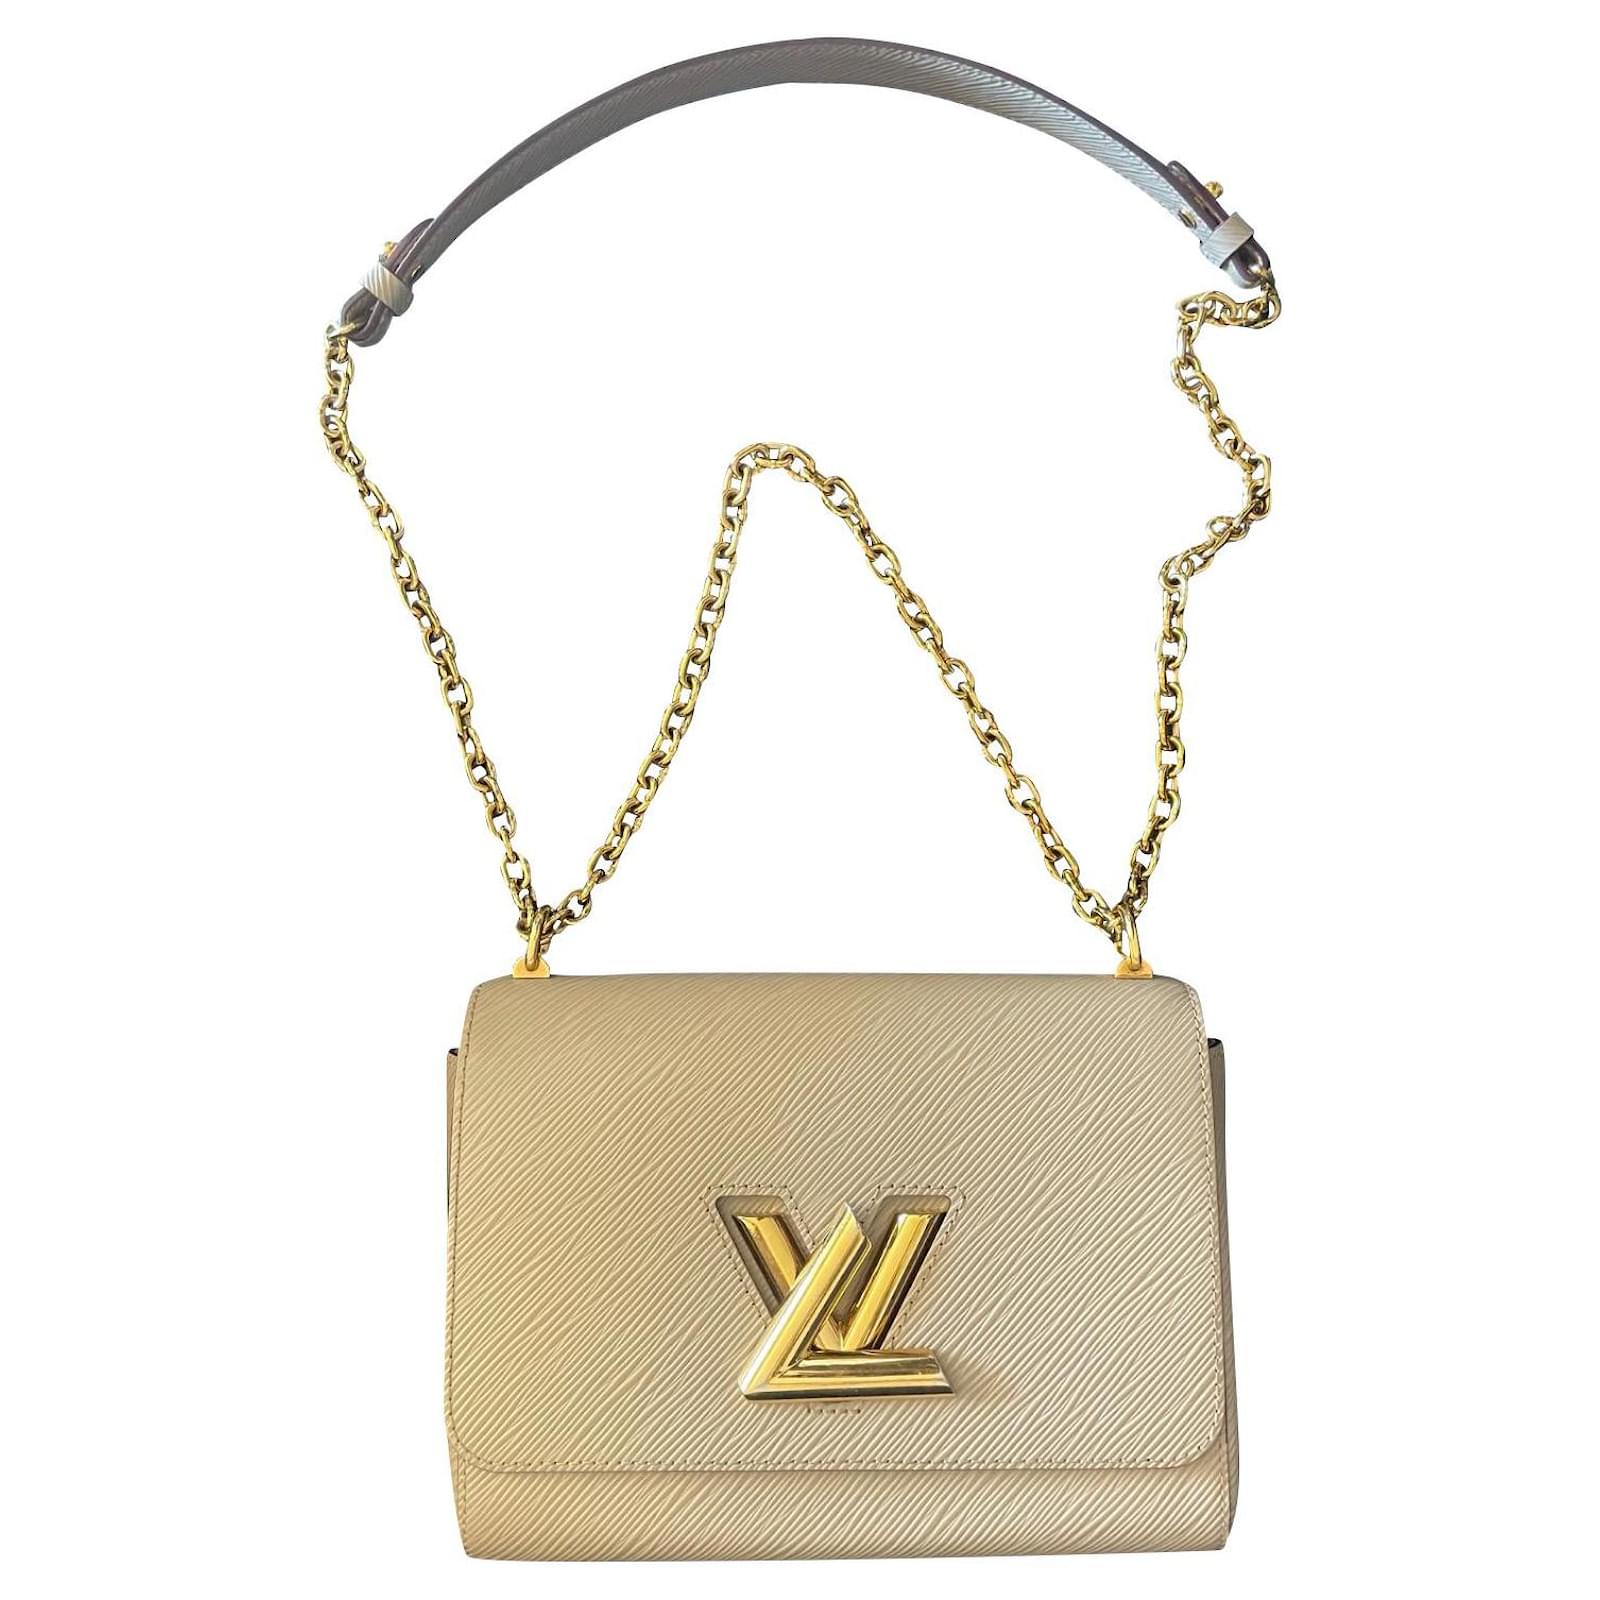 Louis Vuitton Beige Epi Leather Twist MM Bag Louis Vuitton